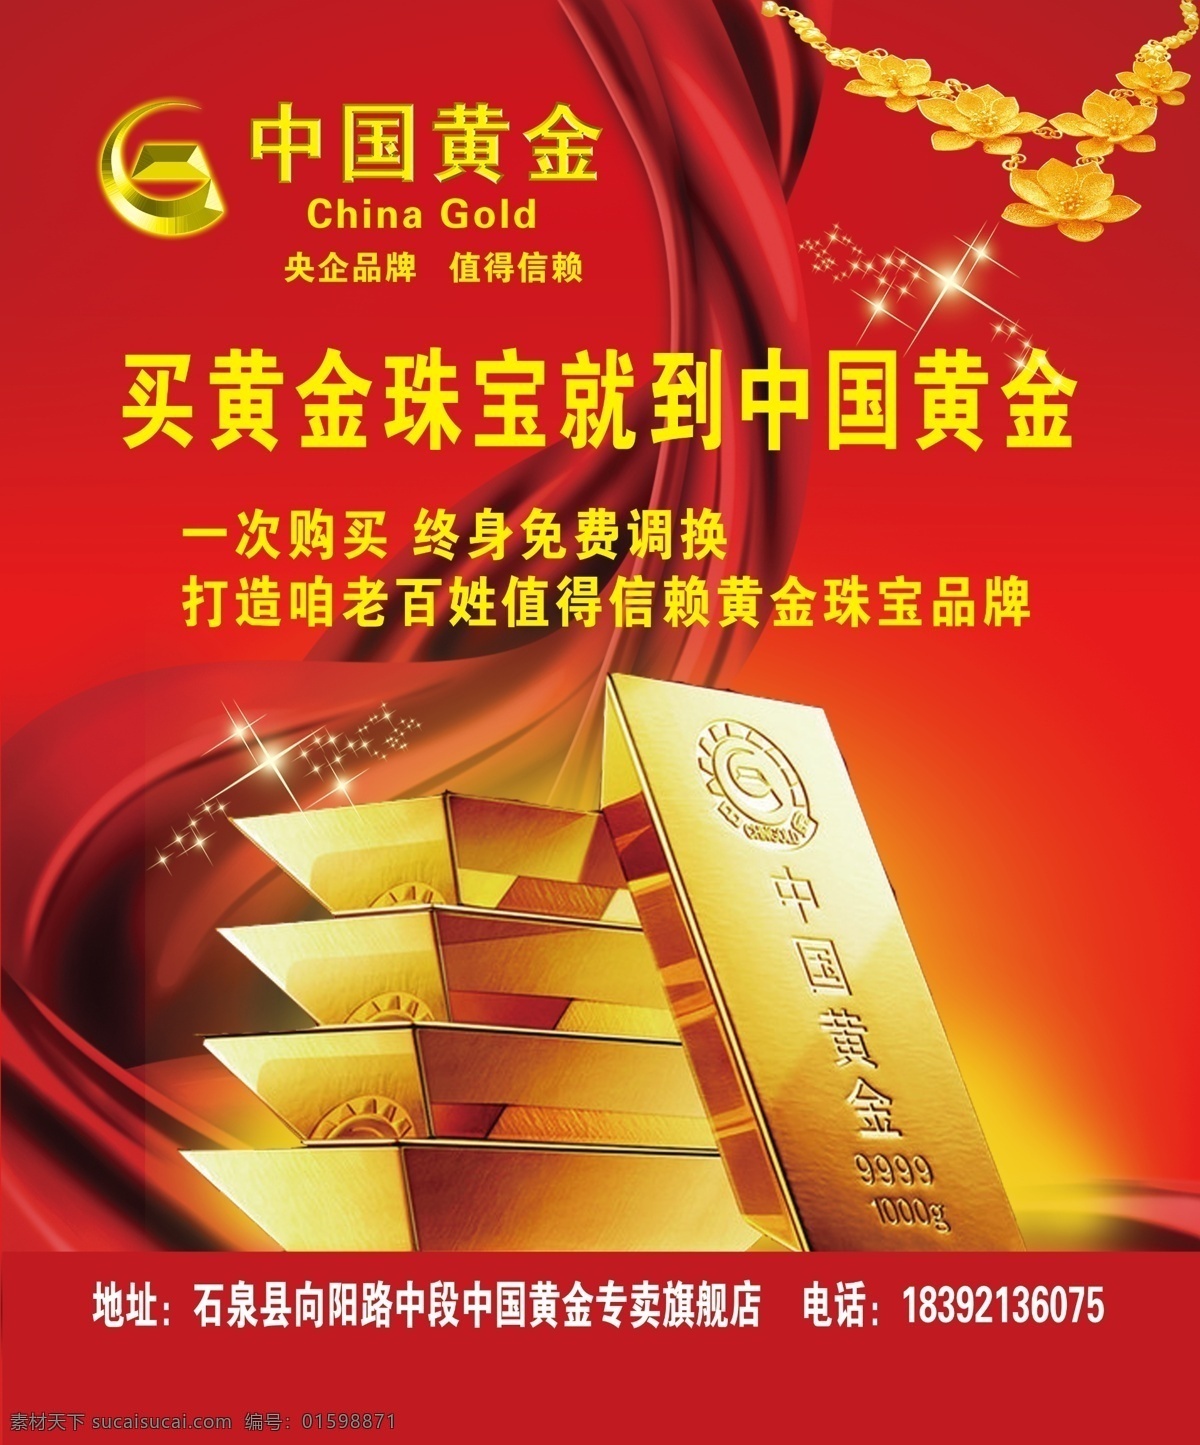 中国黄金 中国黄金标志 logo 央企品牌 值得信赖 黄金 金条 黄金项链 星光 广告宣传 广告素材 源文件 广告设计模板